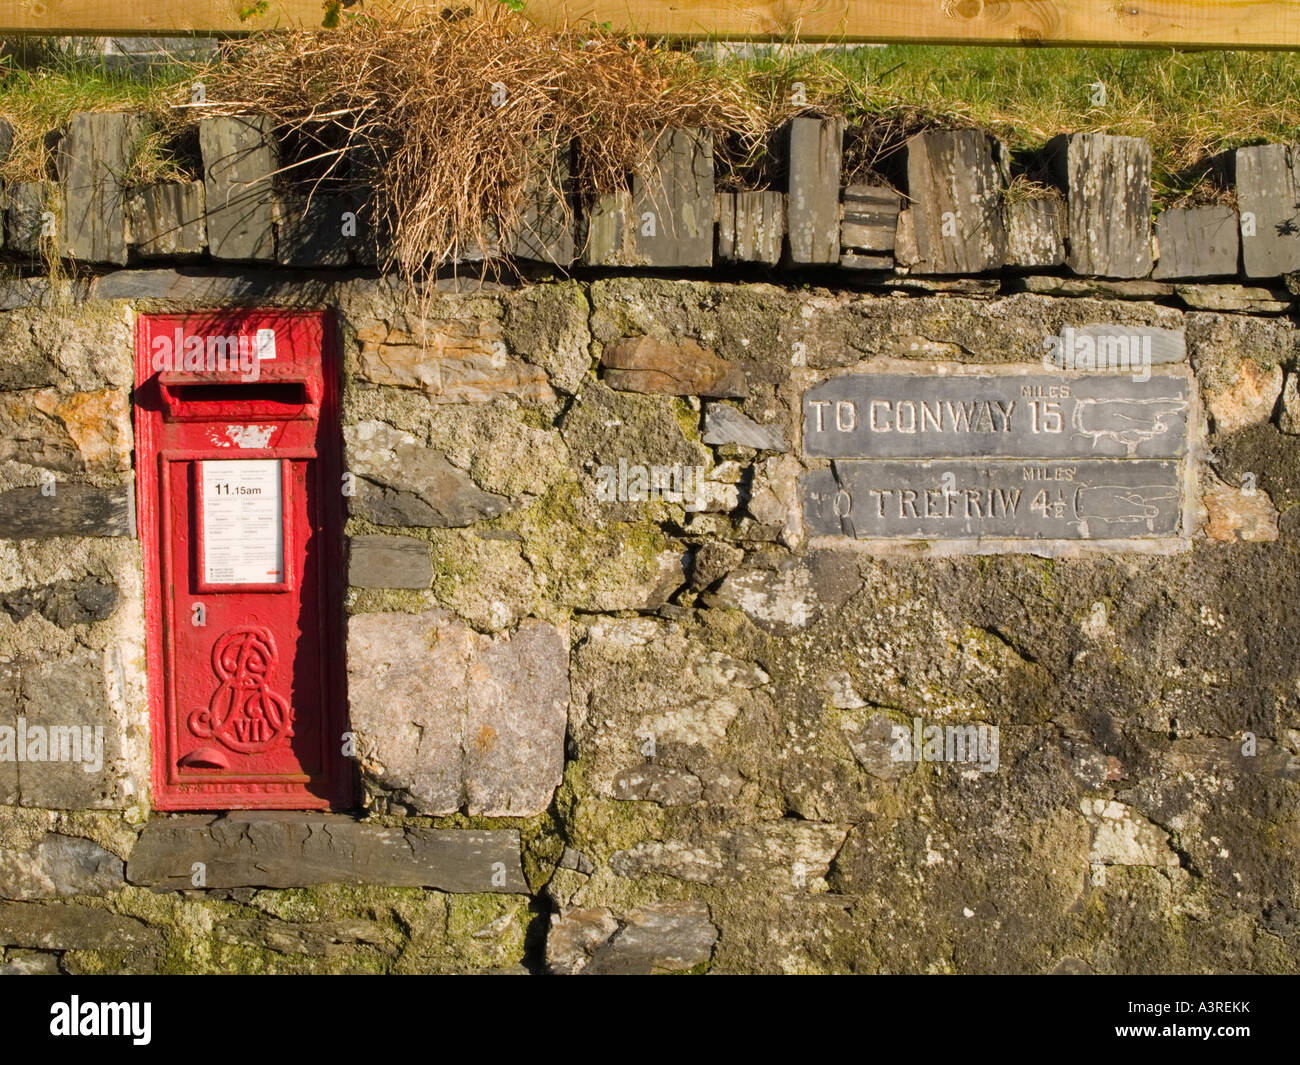 George VII post box rouge ardoise gravée panneaux indicateurs dans mur de pierre Betws-Y-Coed Conwy North Wales UK Banque D'Images